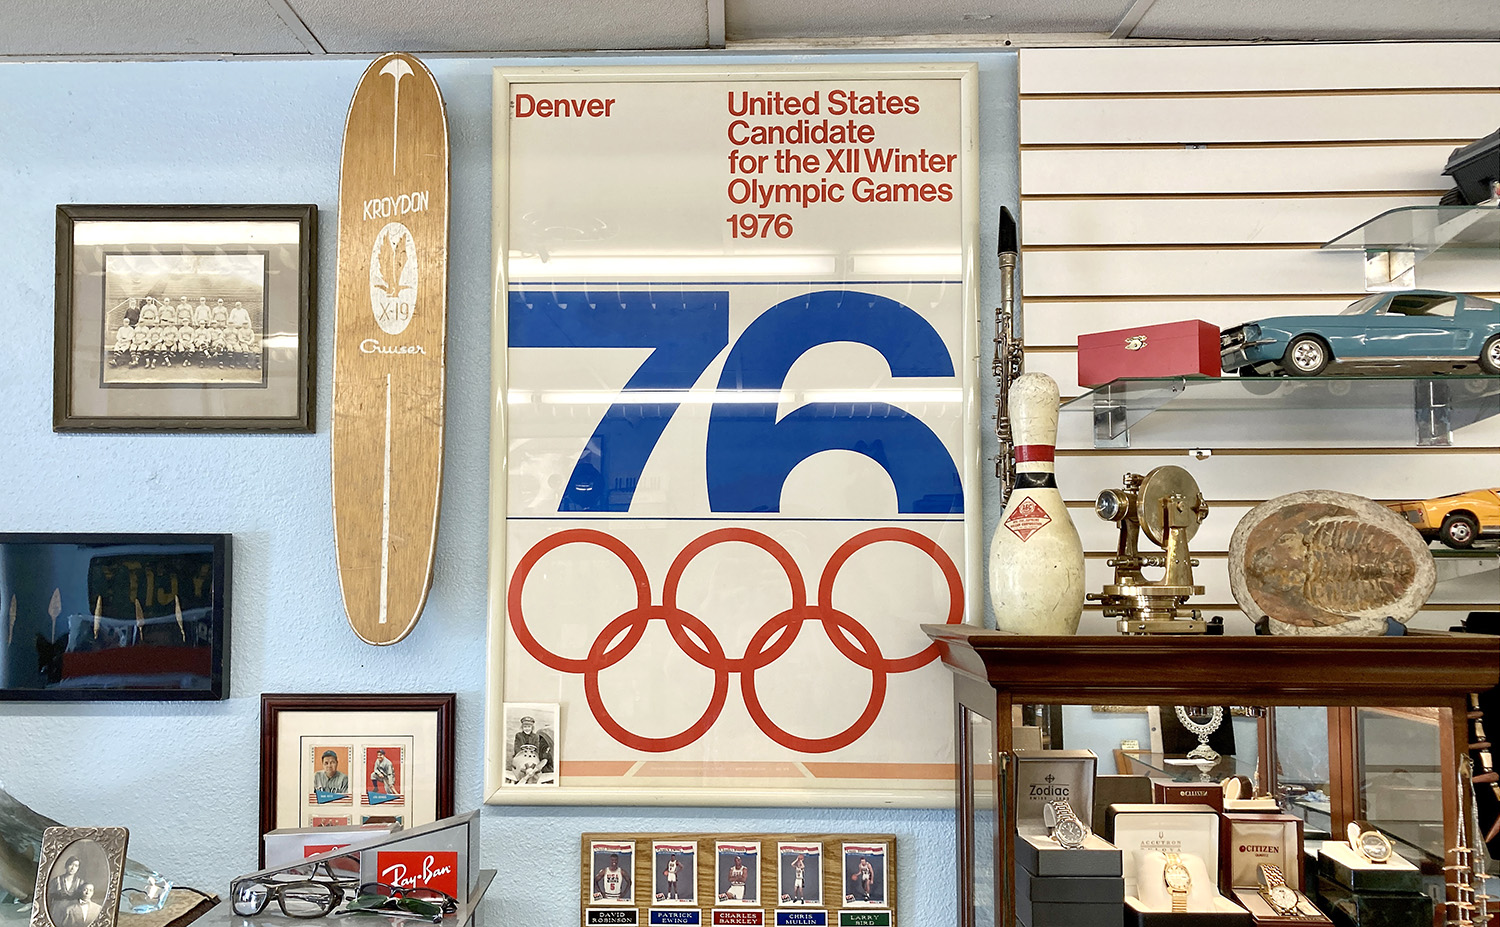 Denver 76 poster found in a Denver-area vintage shop